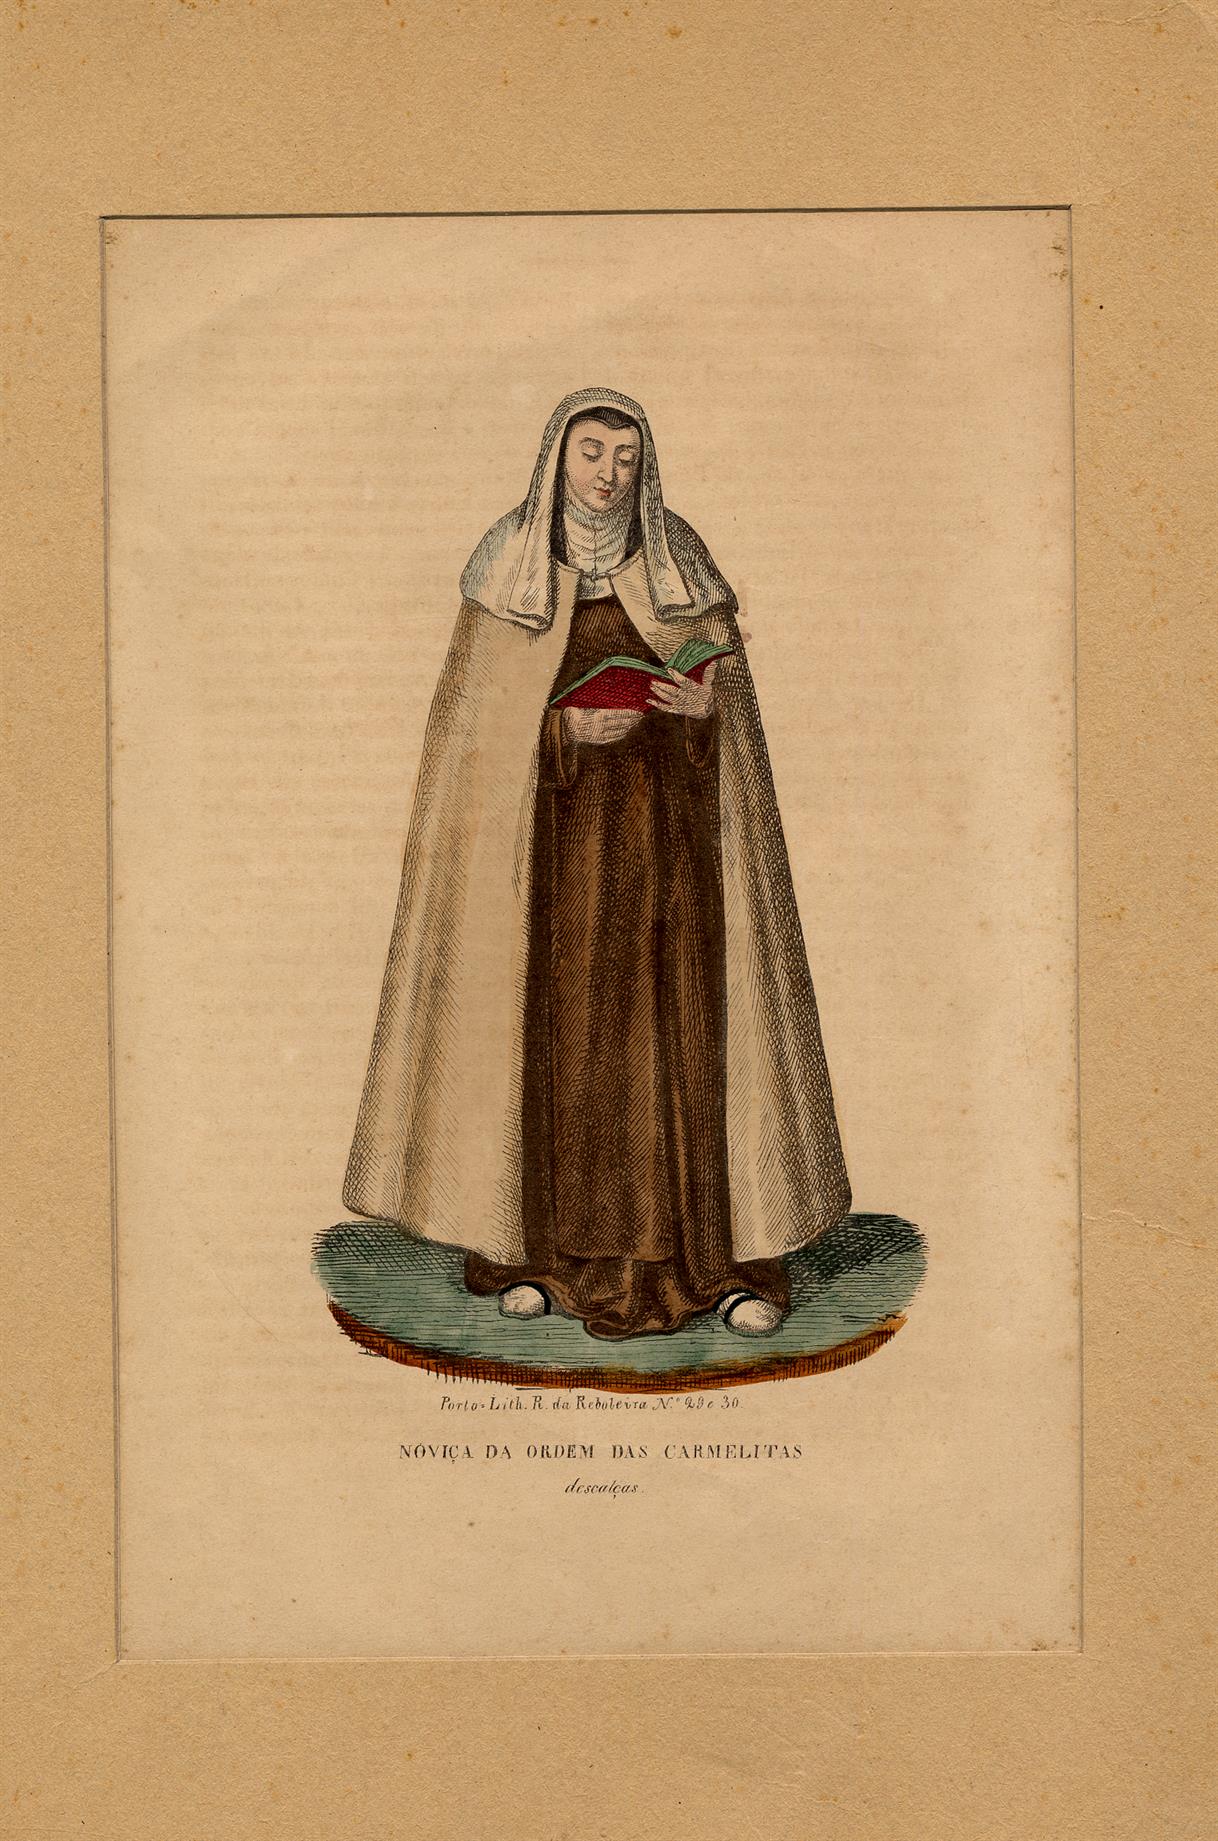 Noviça da Ordem das Carmelitas Descalças